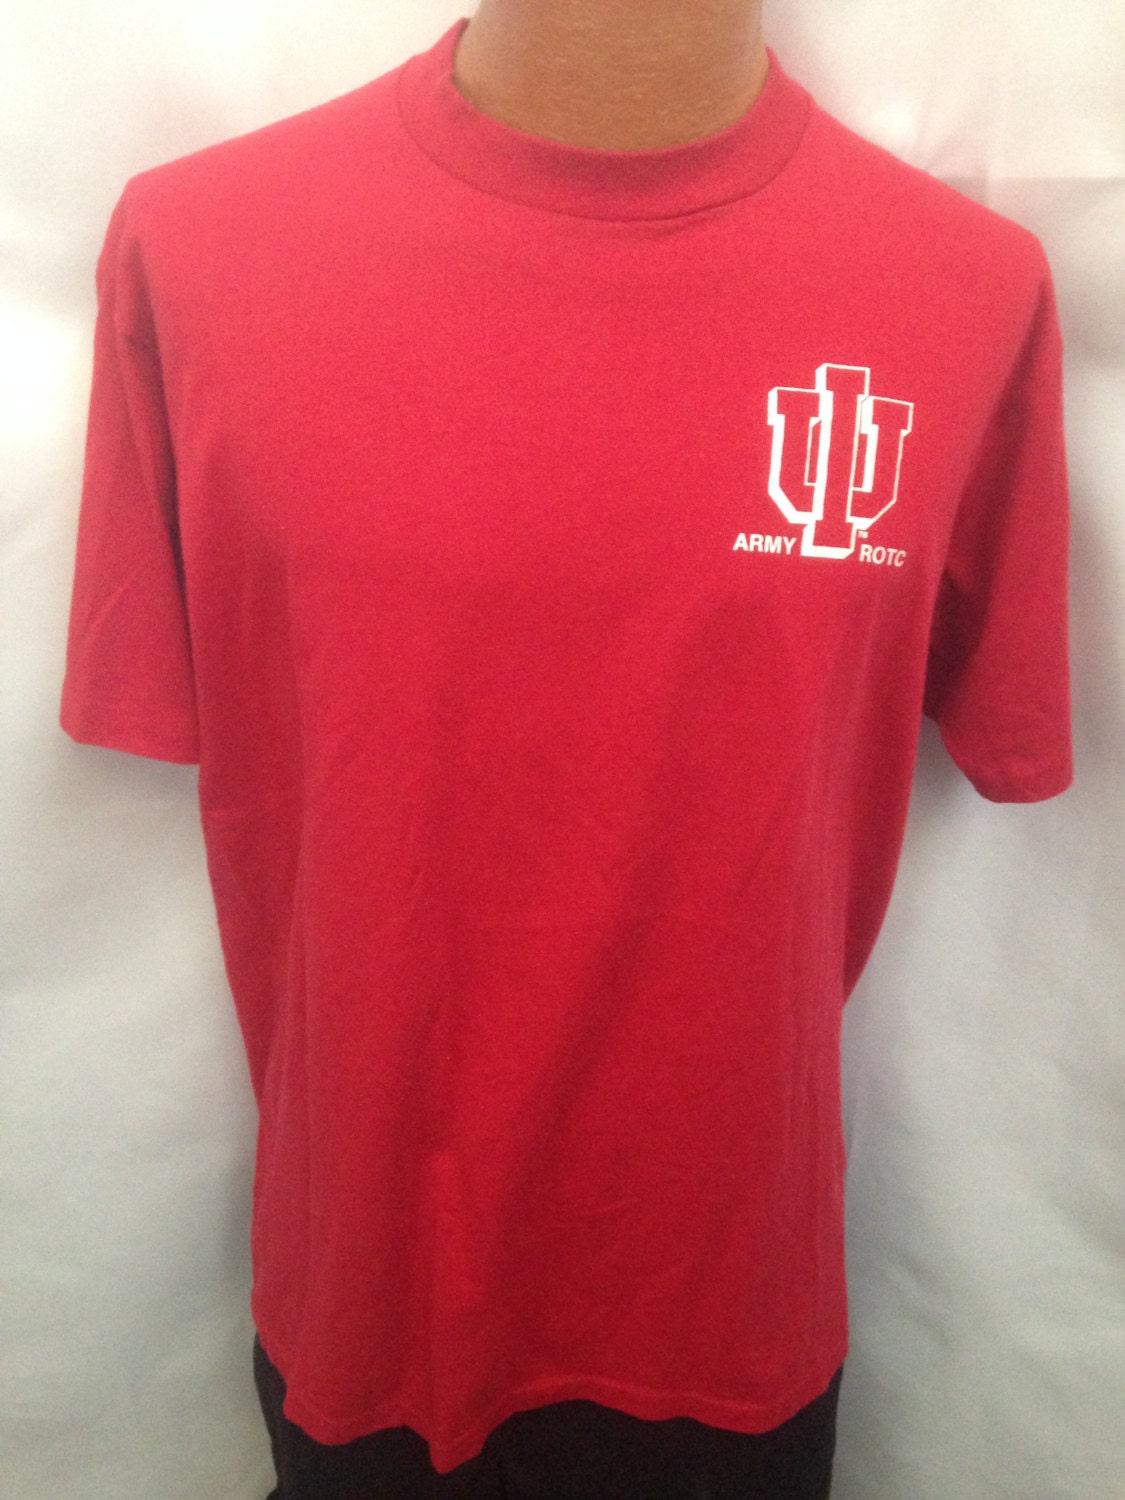 Vintage Indiana University Army ROTC T-Shirt by AmusedClothingCo